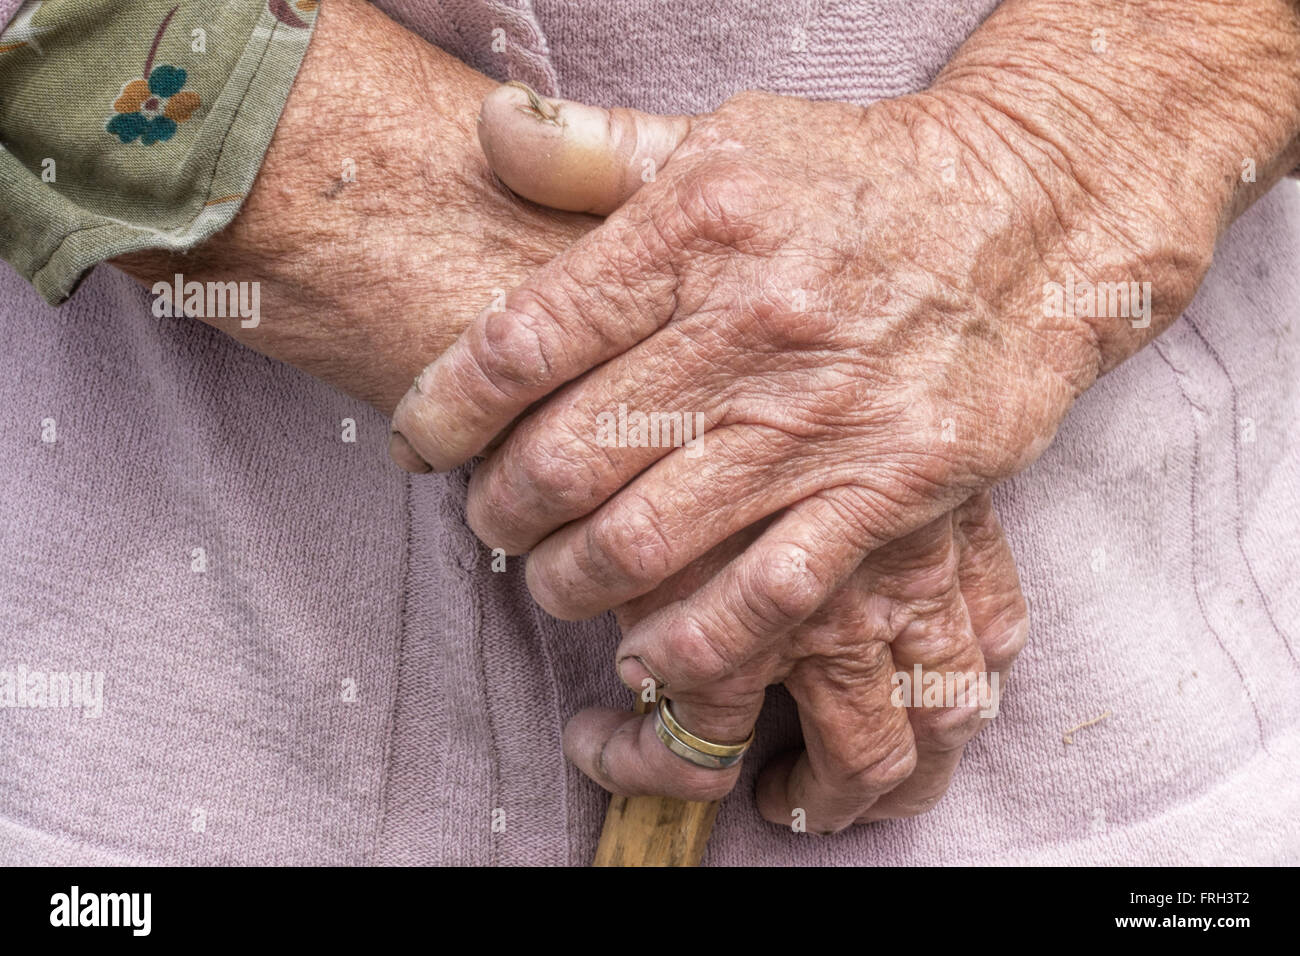 Processo di Invecchiamento - molto vecchia donna senior mani pelle rugosa Foto Stock